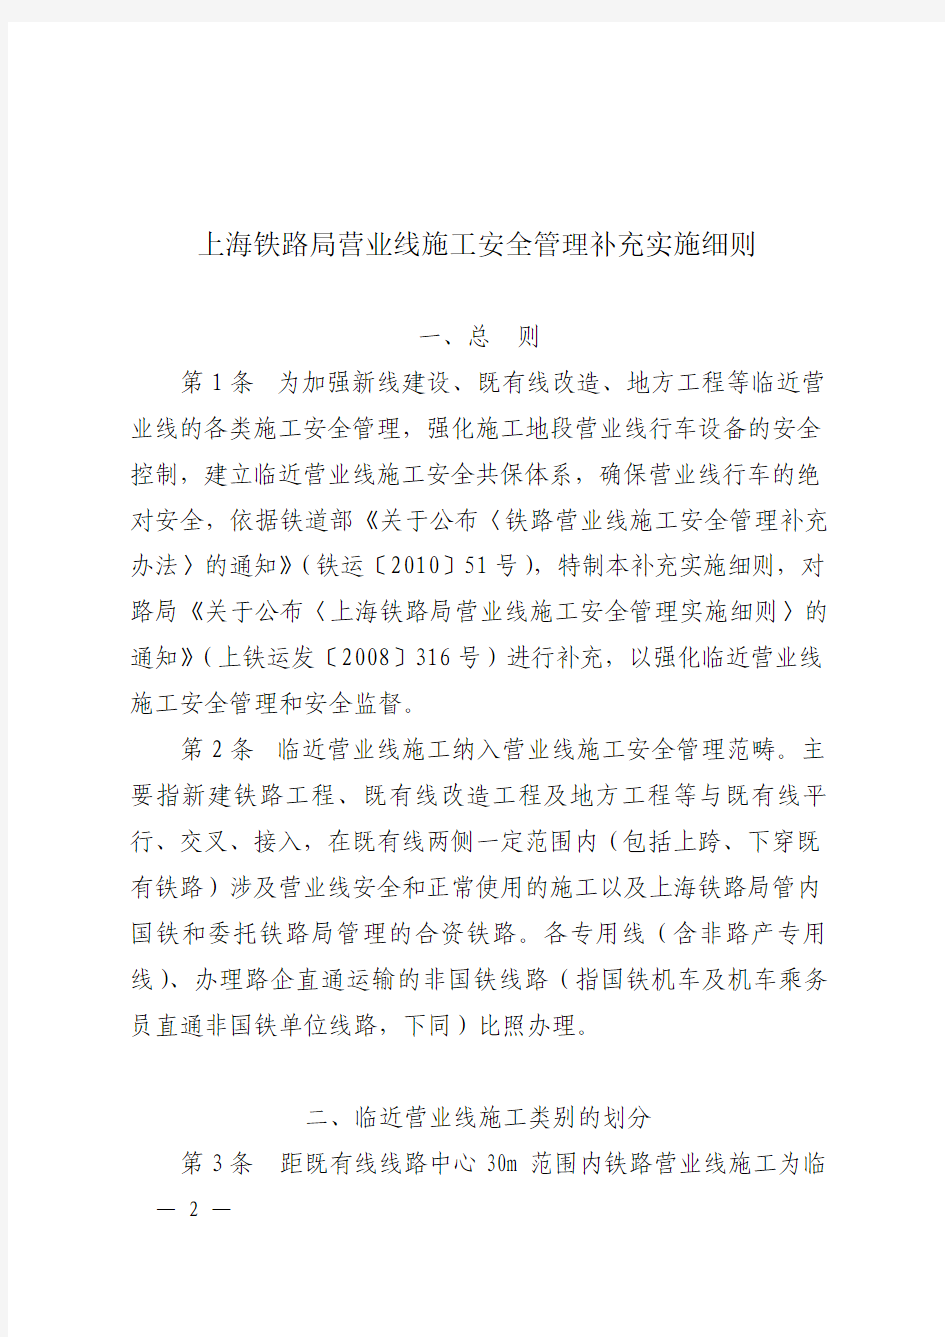 上海局铁路营业线施工安全管理补充实施细则2010运发[161]号文